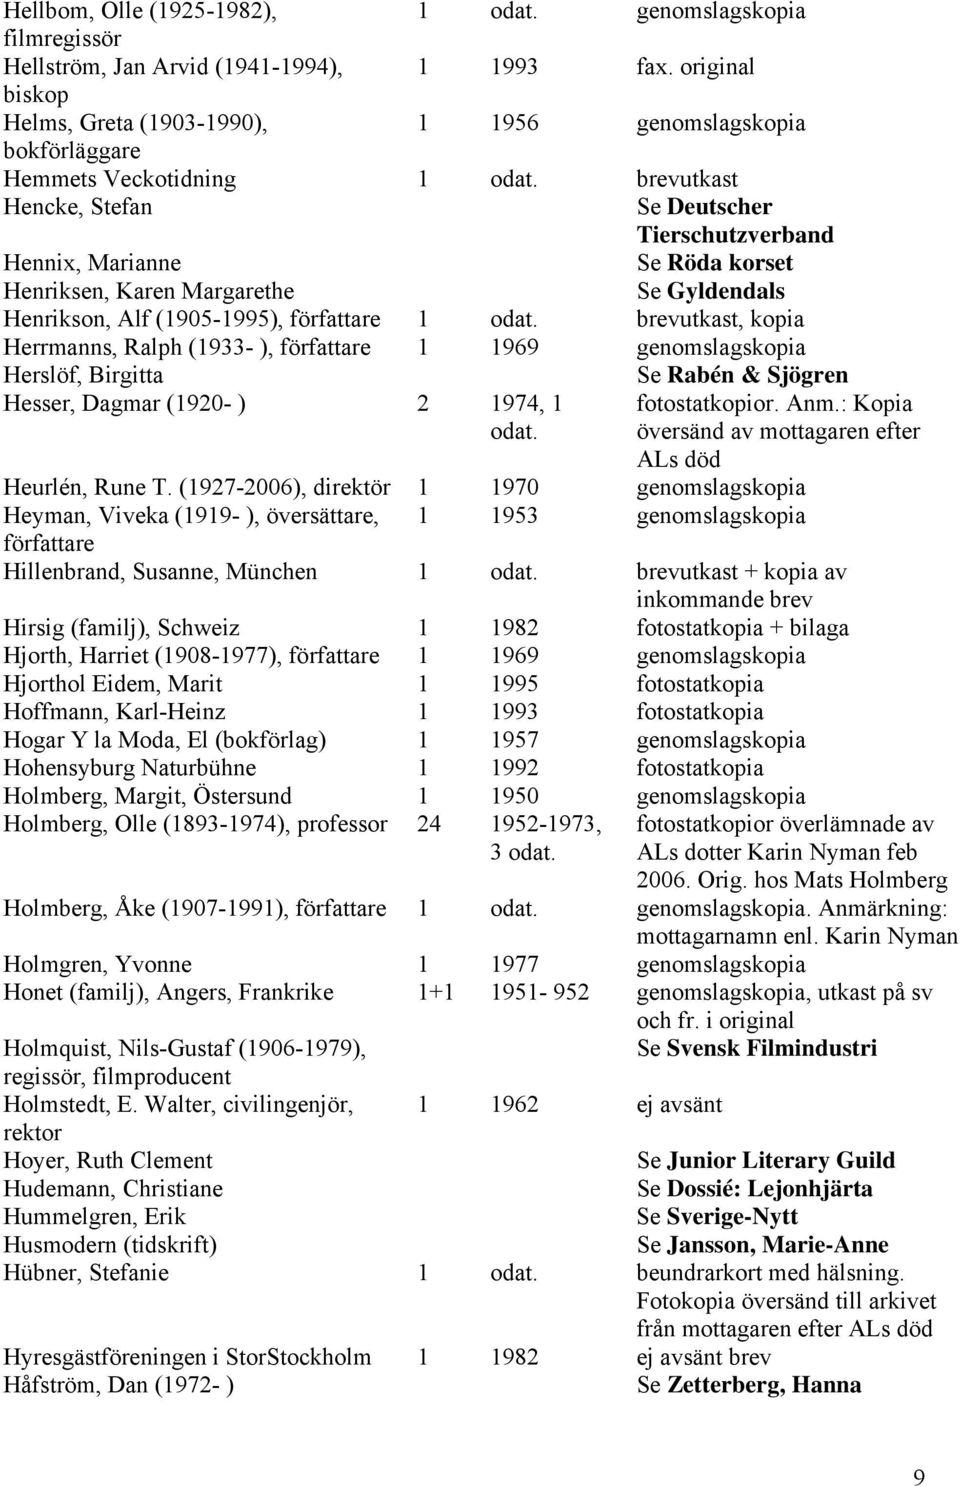 brevutkast Hencke, Stefan Se Deutscher Tierschutzverband Hennix, Marianne Se Röda korset Henriksen, Karen Margarethe Se Gyldendals Henrikson, Alf (1905-1995), författare 1 odat.